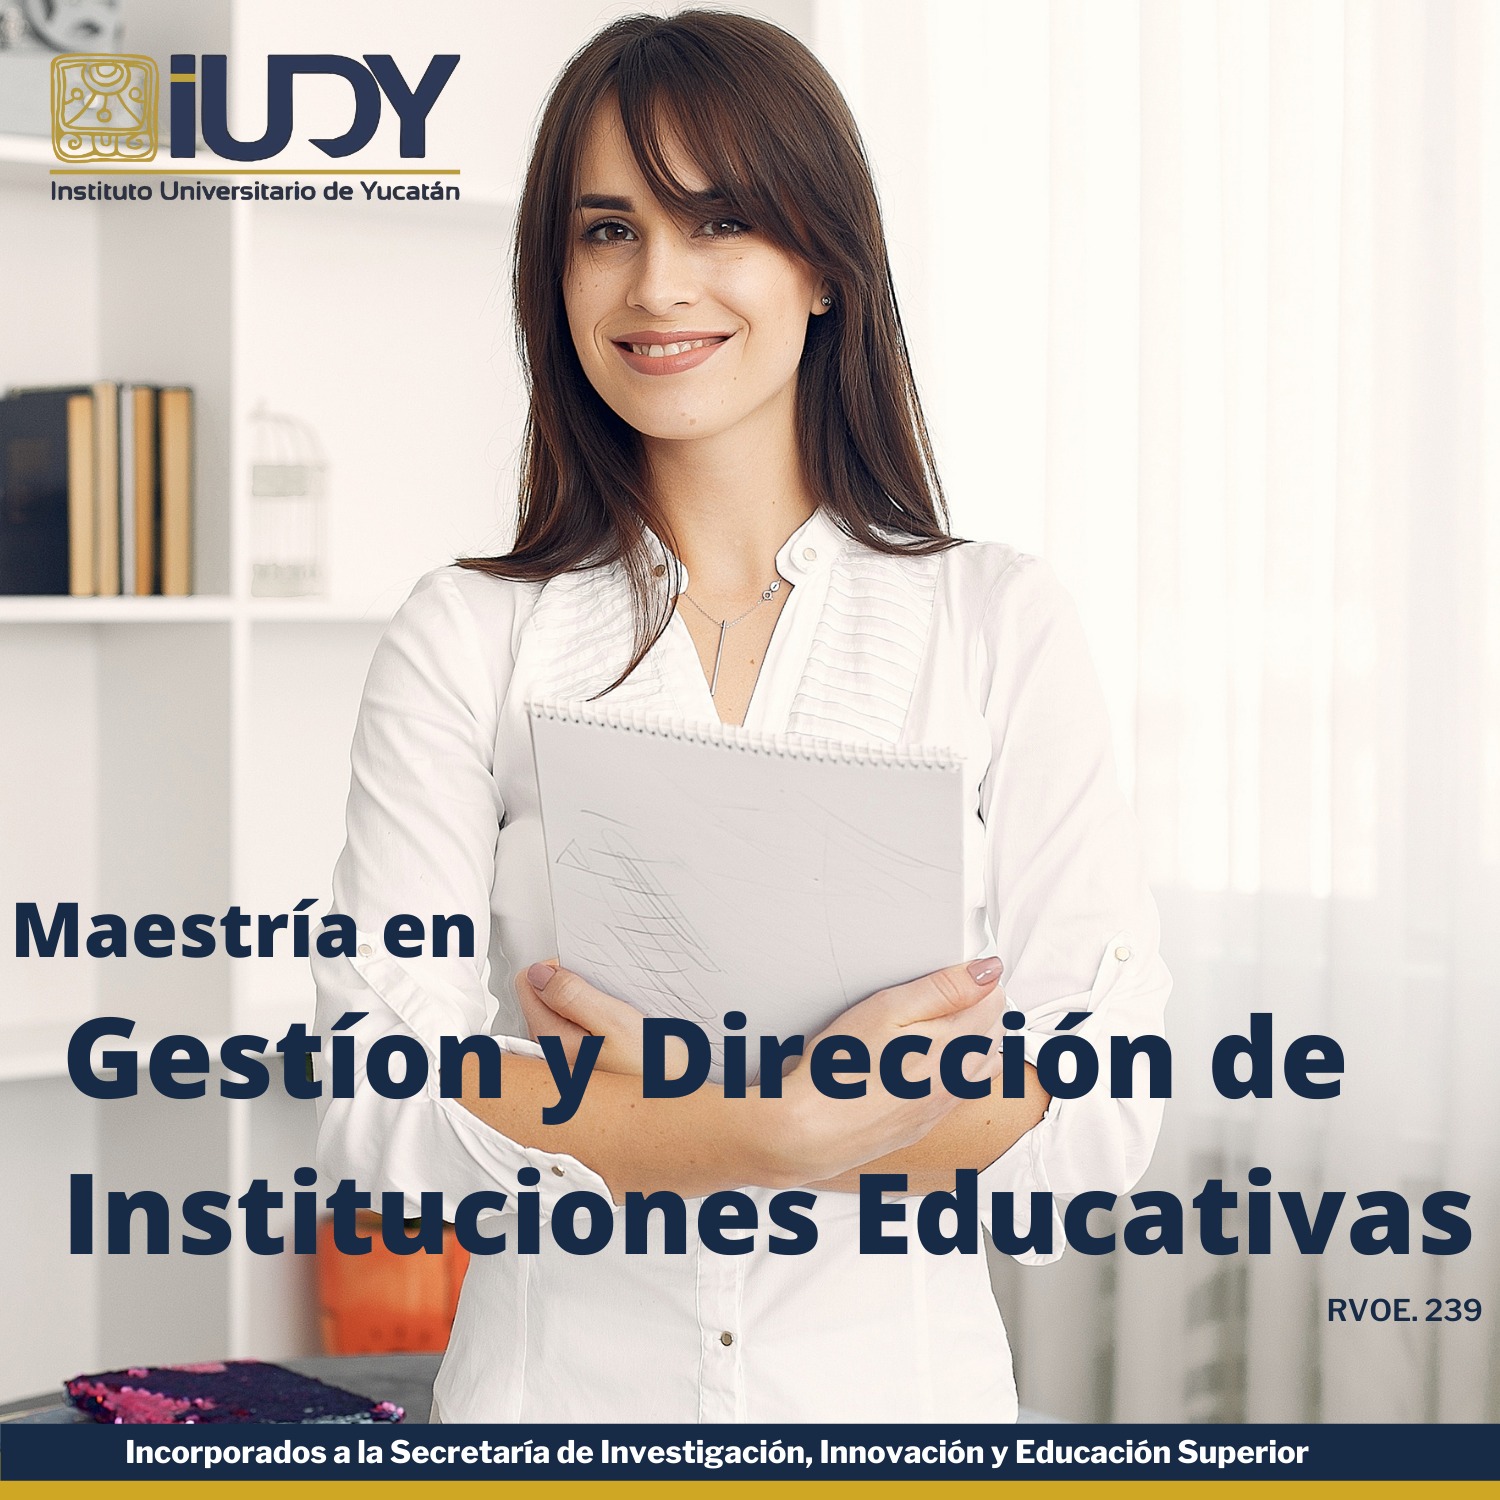 Maestría en Gestión y Dirección de Instituciones Educativas.